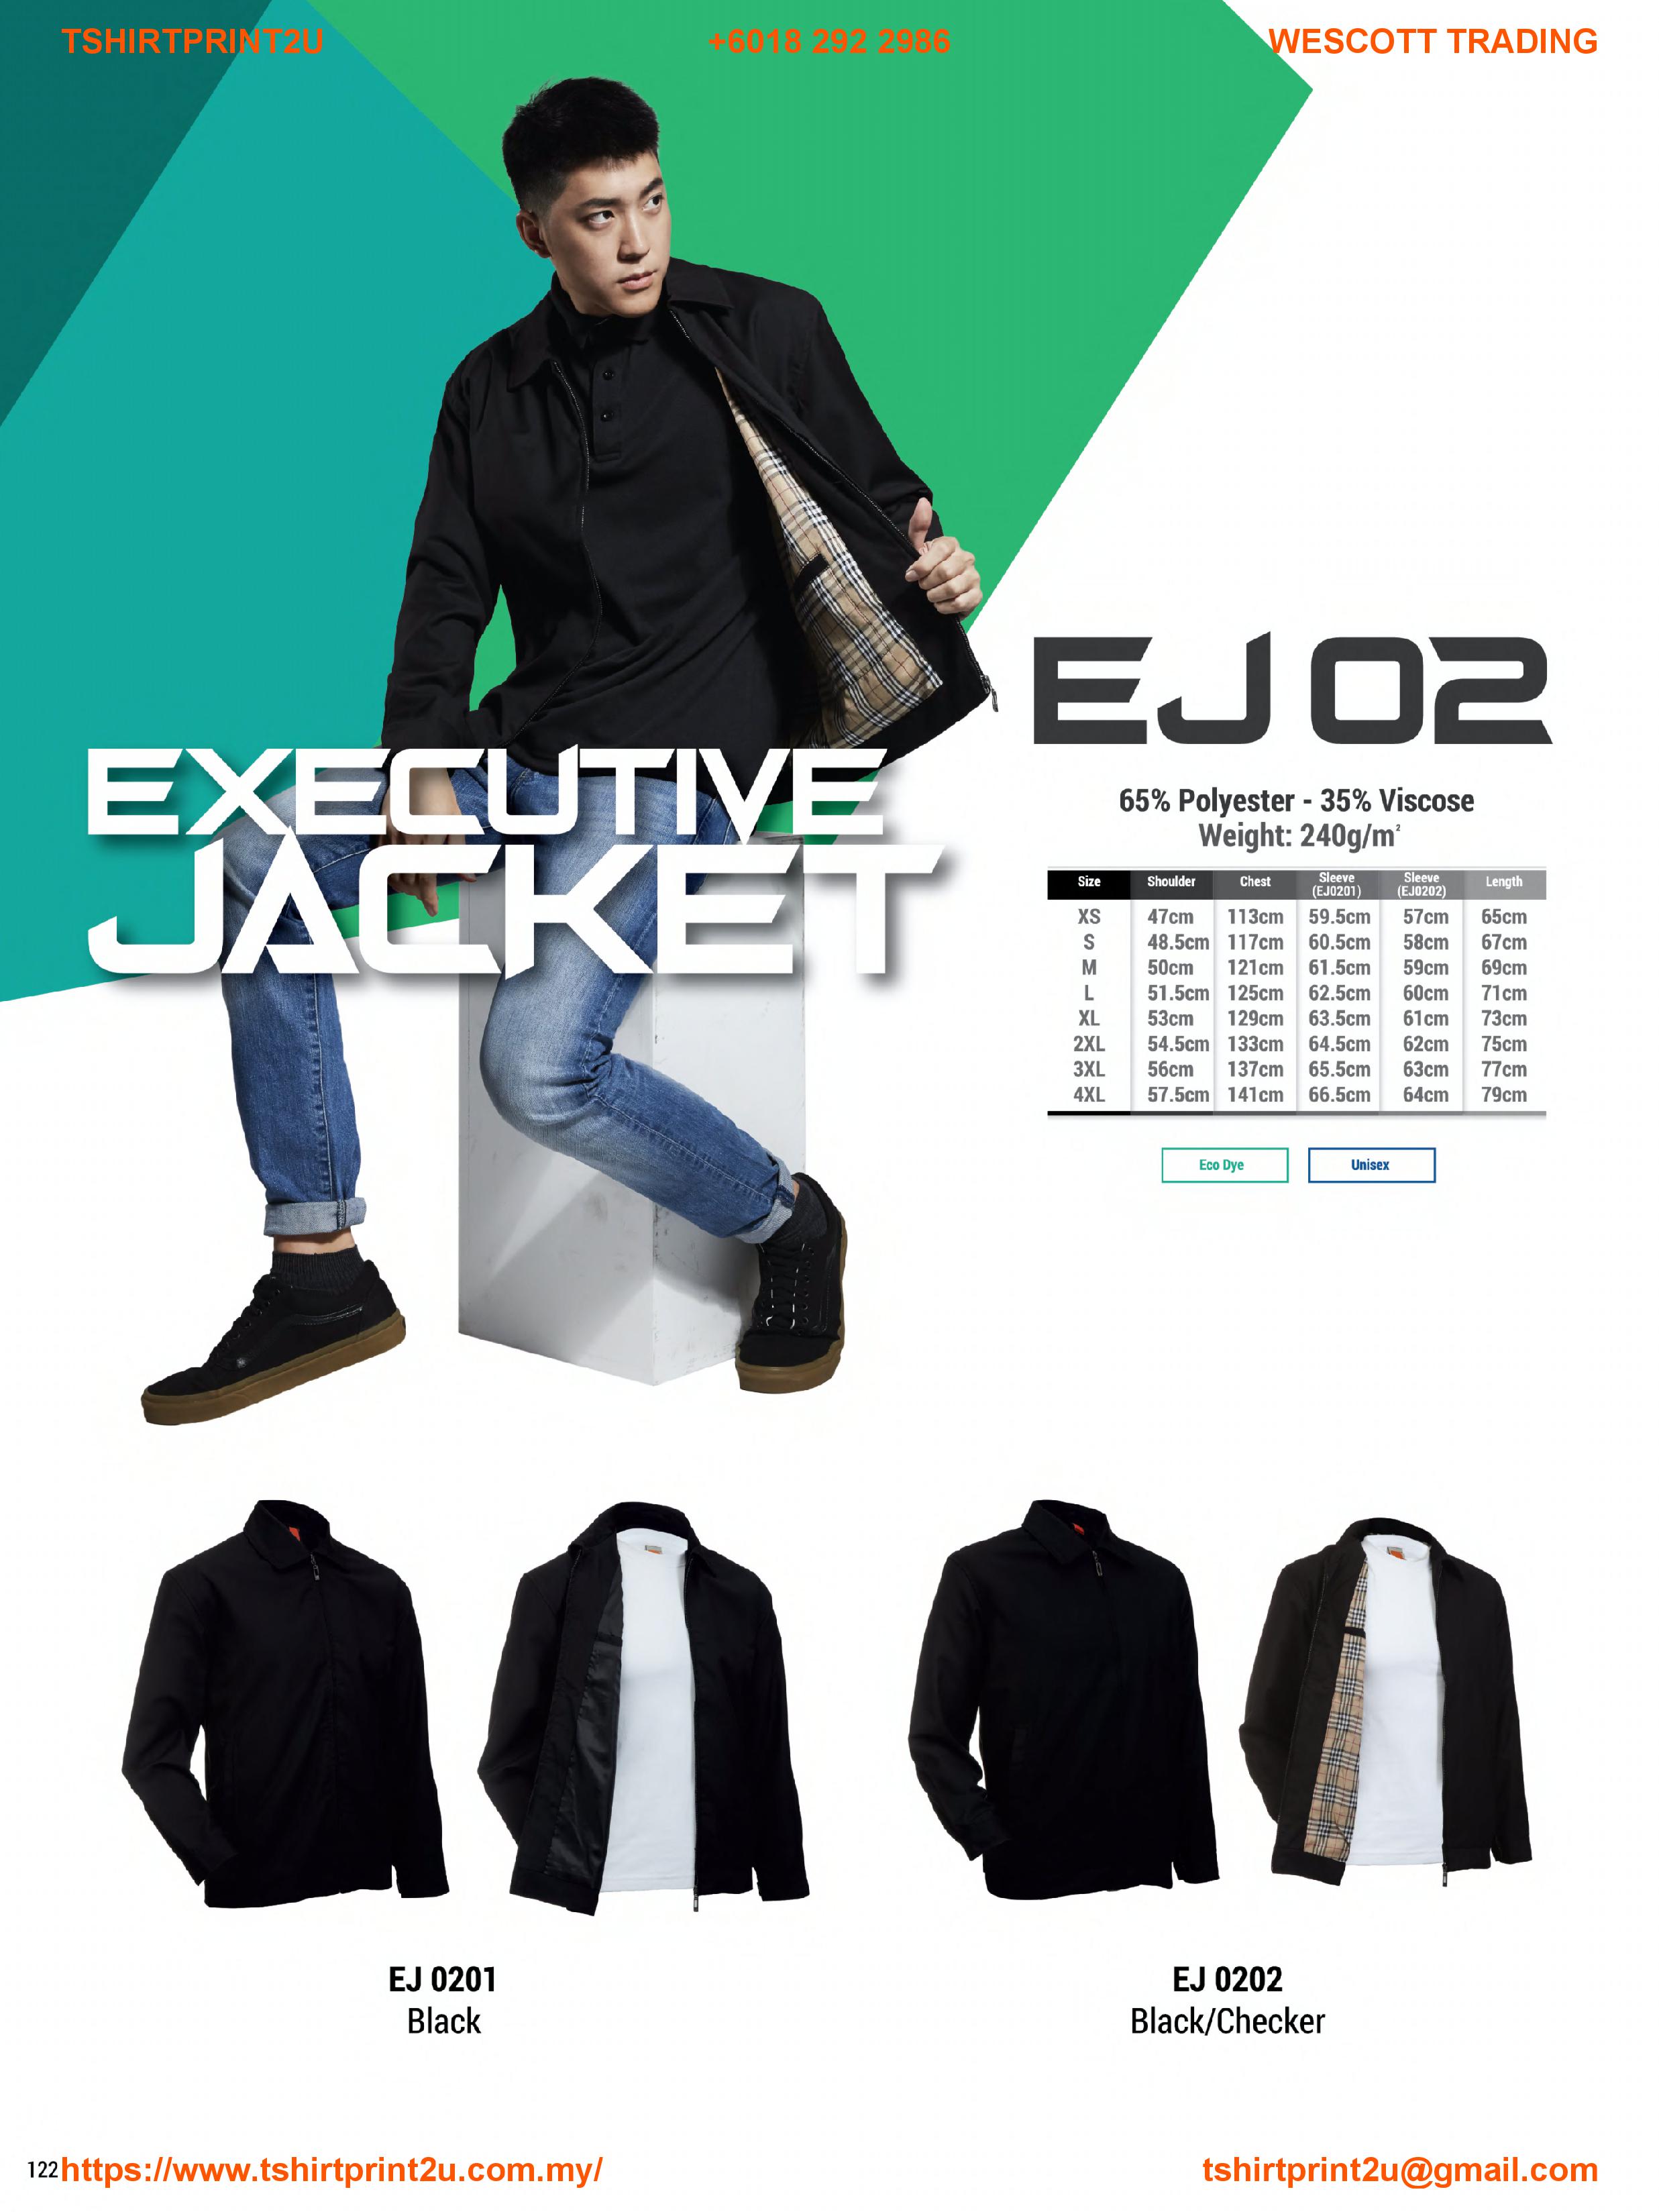 A001 - Executive Jacket CEO Jaacket